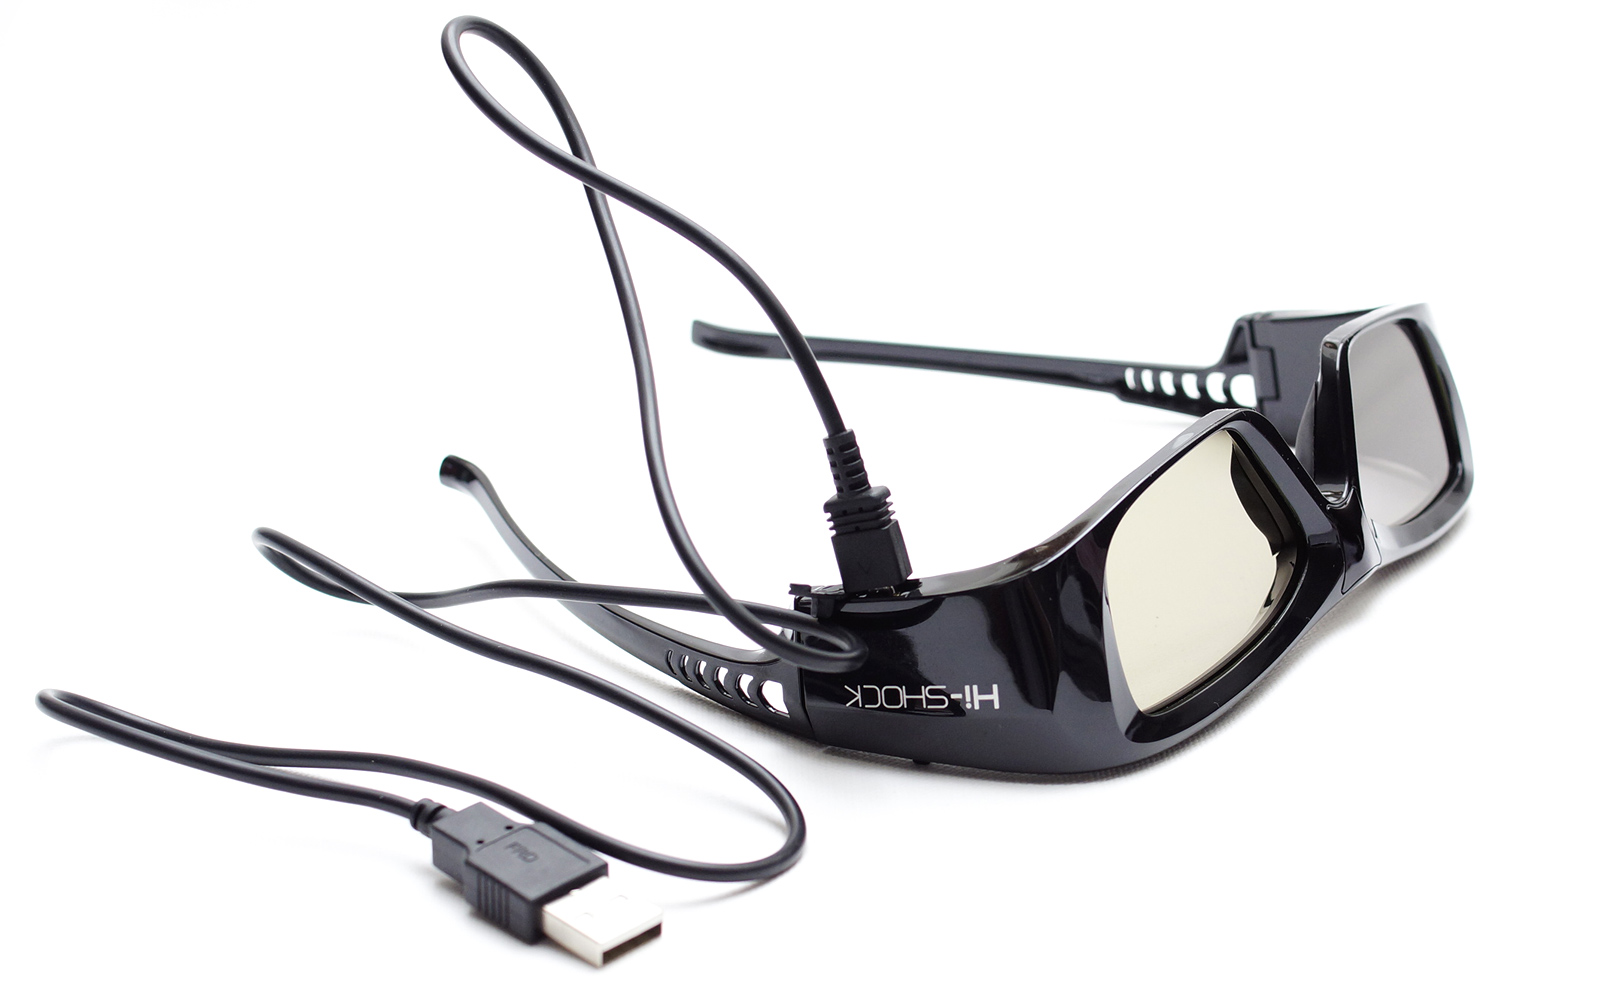 Beamer - DLP 3D Brille für aktive DLP Brille 3D Pro Black HI-SHOCK - schwarz wiederaufladbar Link 3D Diamond